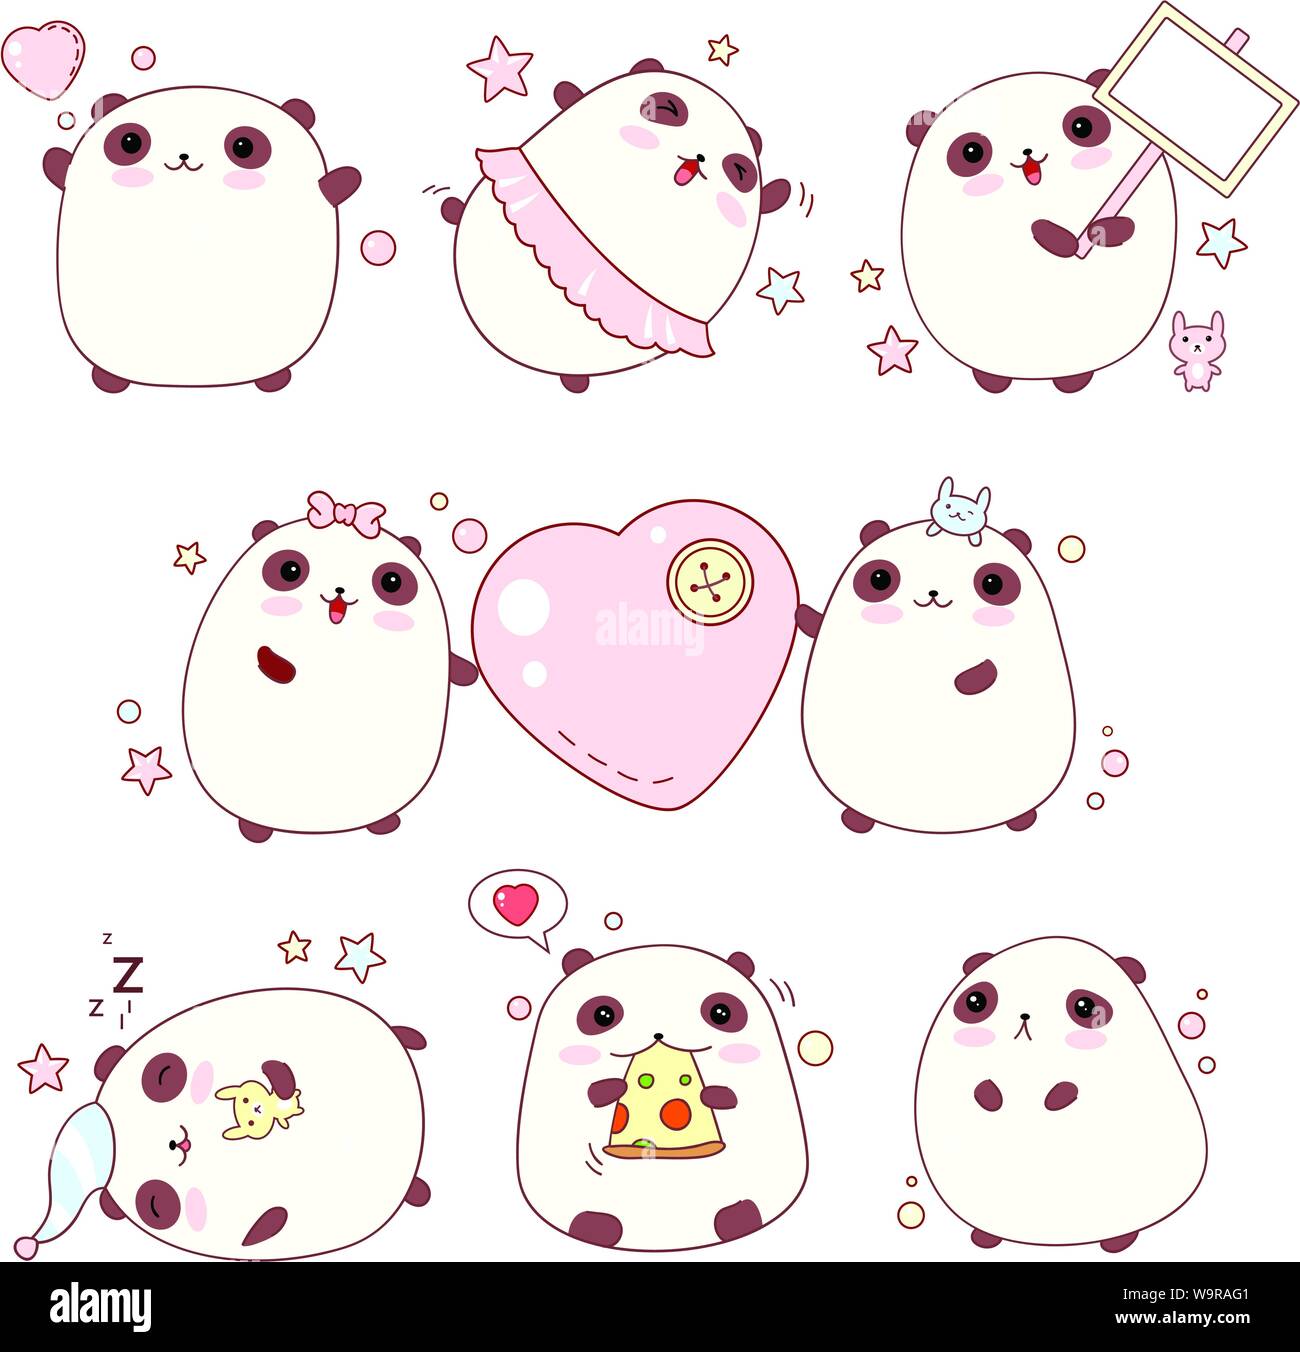 Sammlung der niedliche Pandas mit unterschiedlichen Emotionen in kawaii Stil Stock Vektor